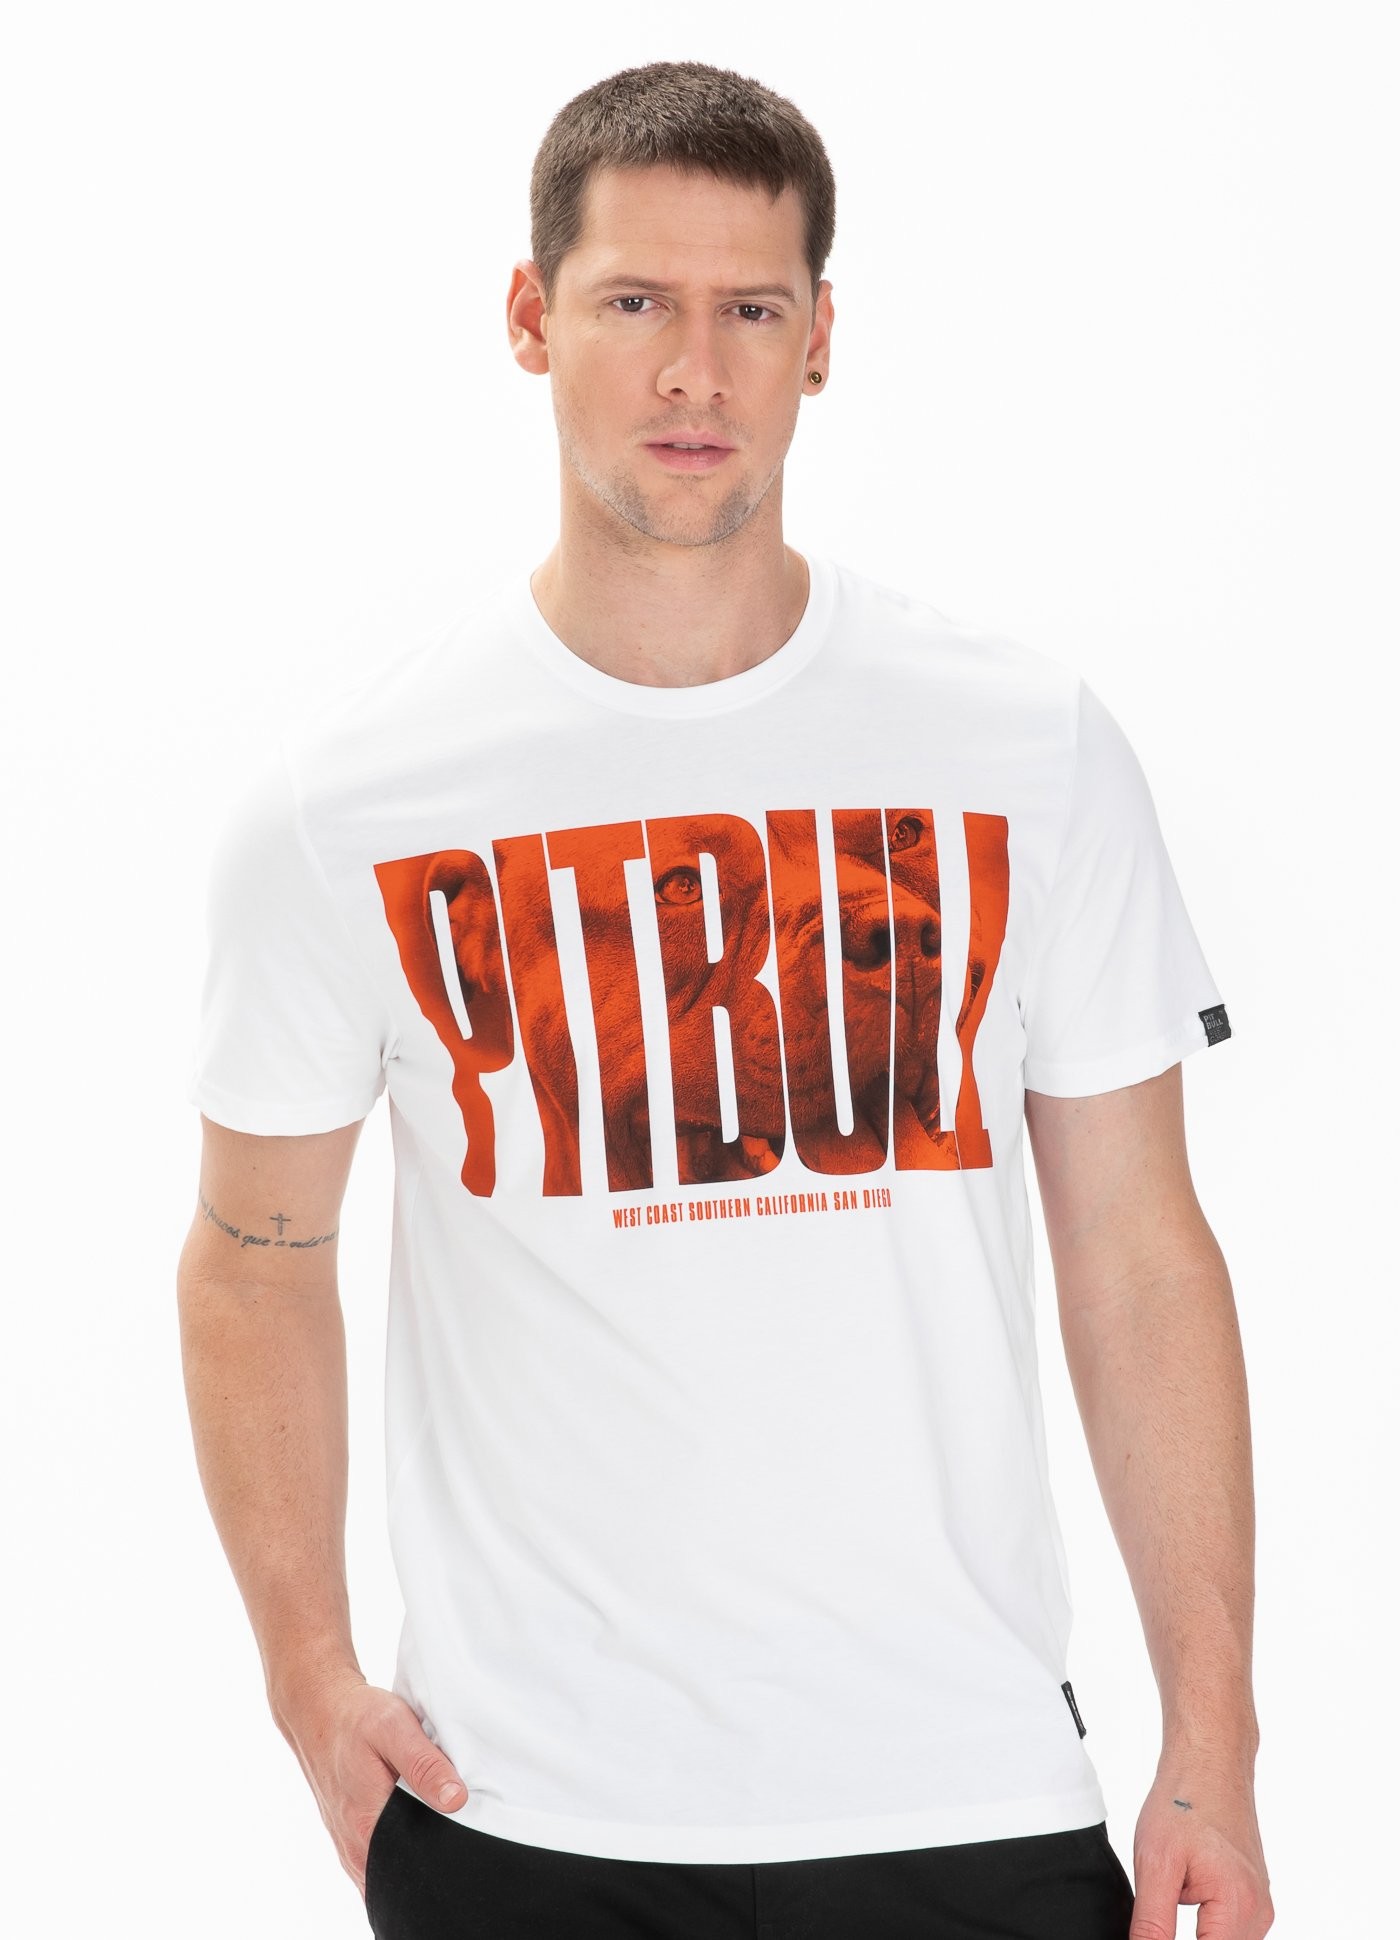 Pitbull West Coast - T-Shirt Orange Dog